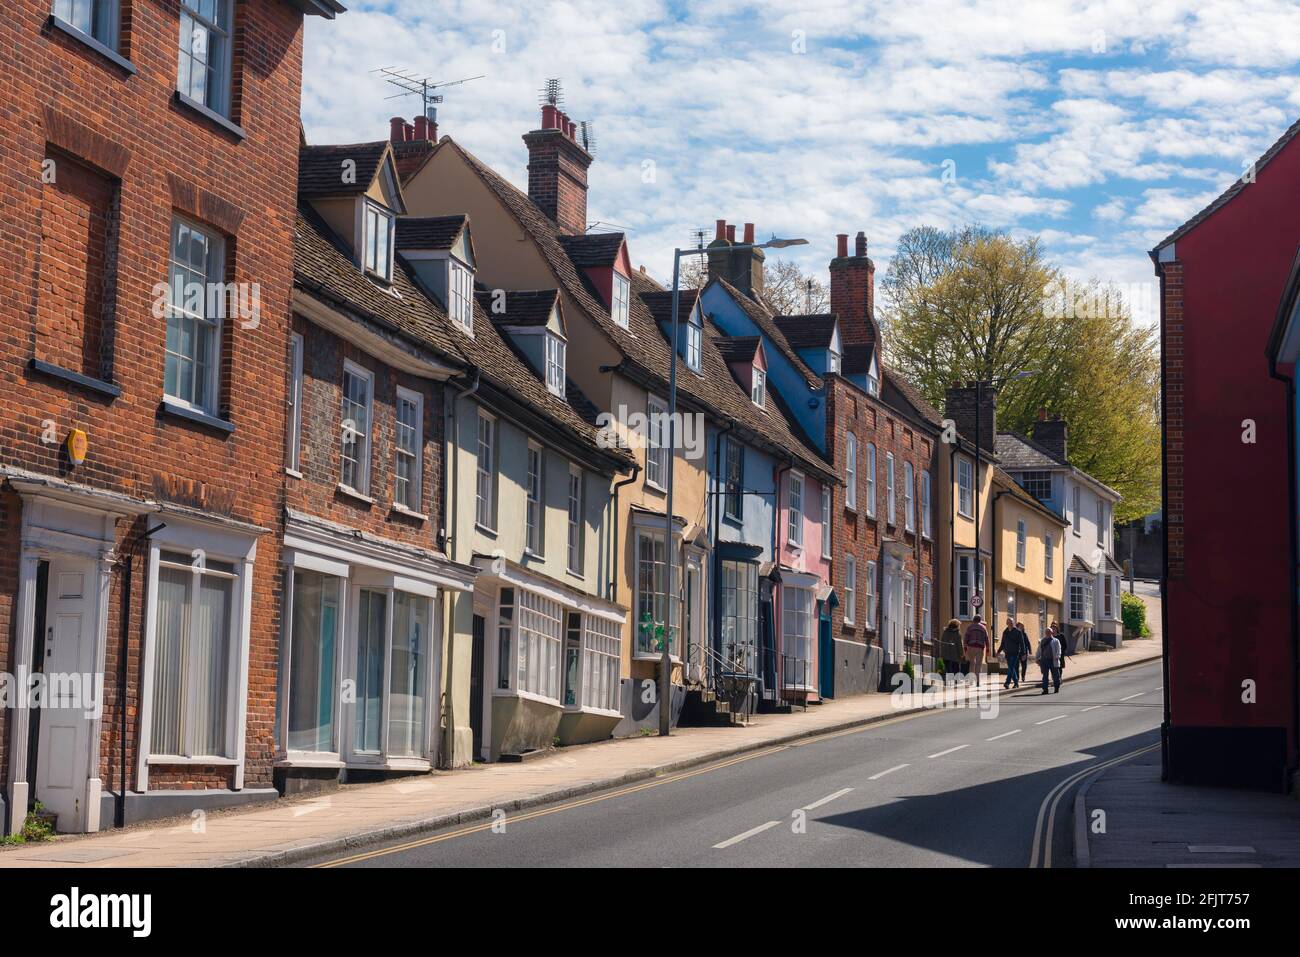 Città di campagna dell'Inghilterra, vista di una varietà di case colorate di diversi stili architettonici su Market Hill nella città Essex di Maldon, Inghilterra, Regno Unito. Foto Stock